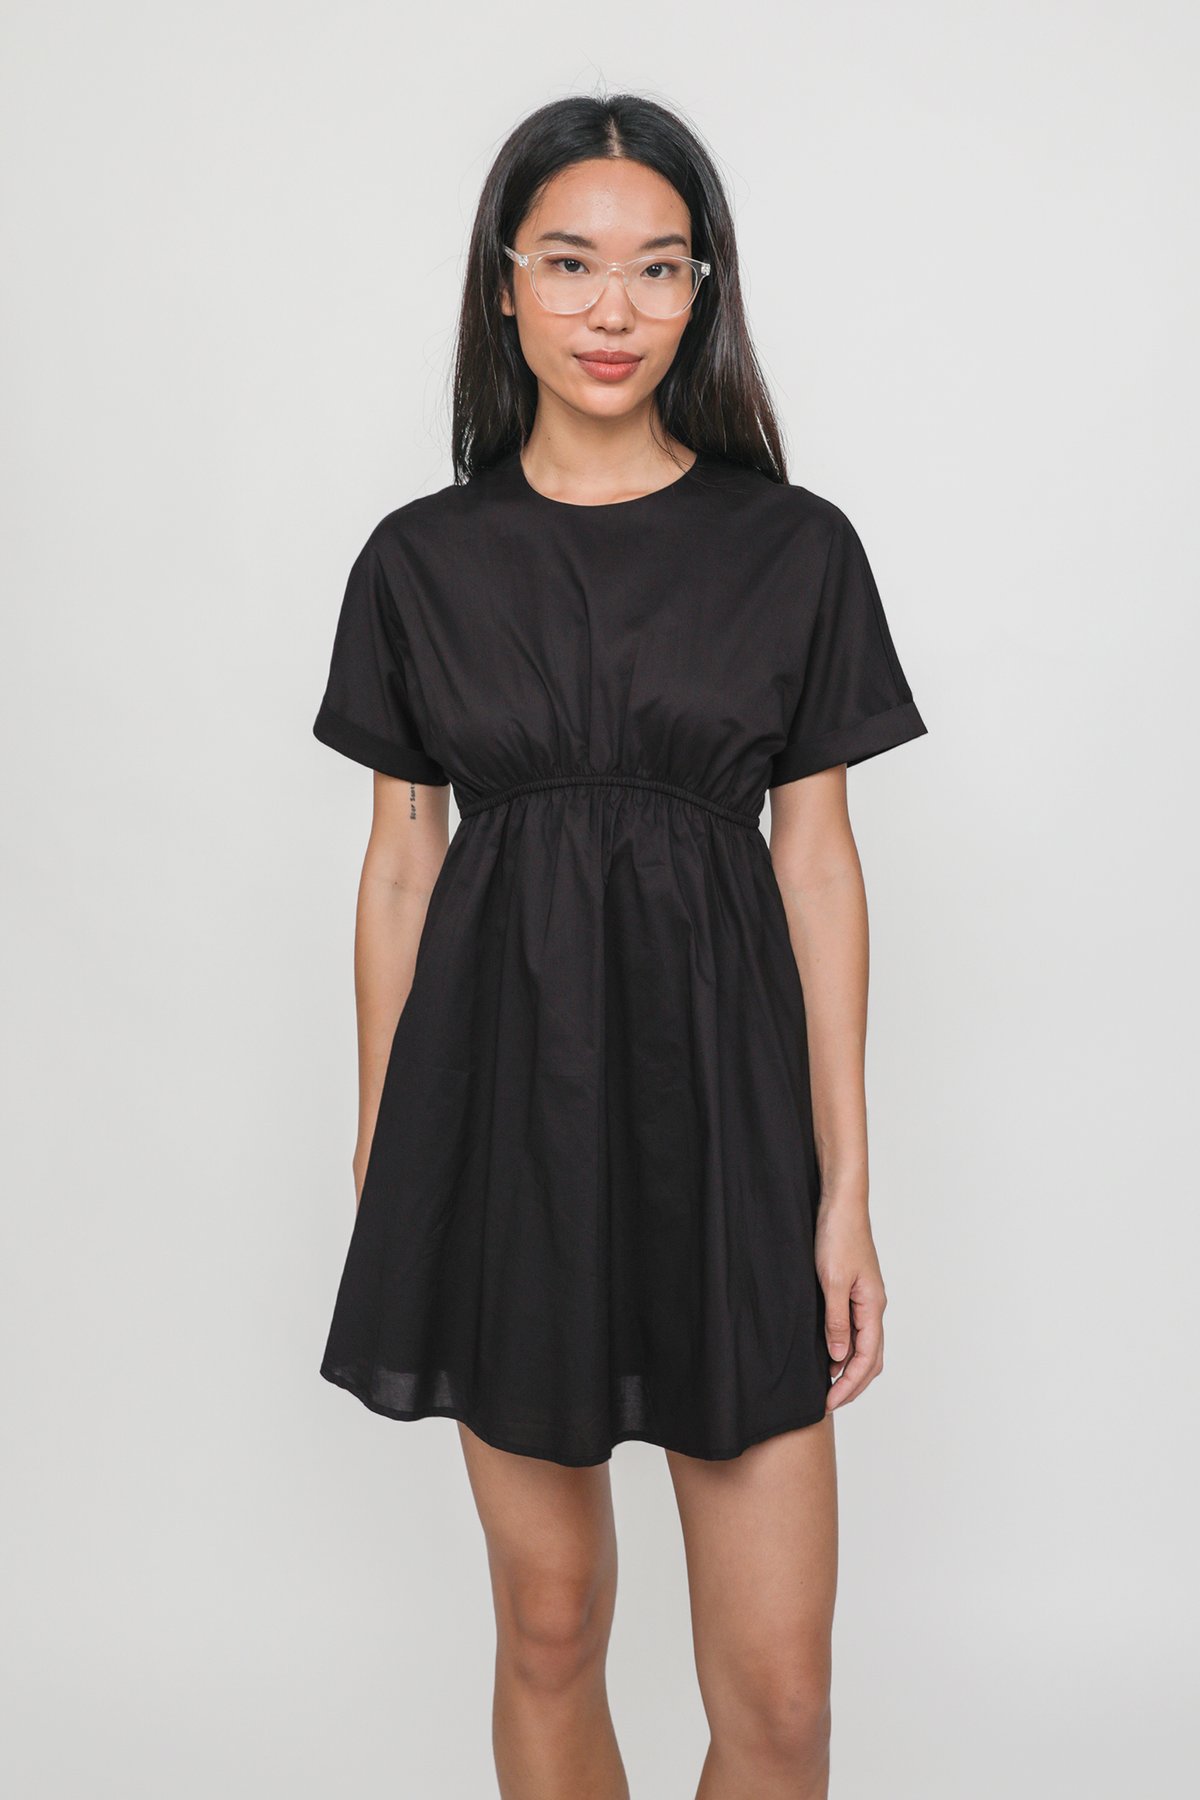 Mindy Cuffed Sleeve Babydoll Dress (Black)